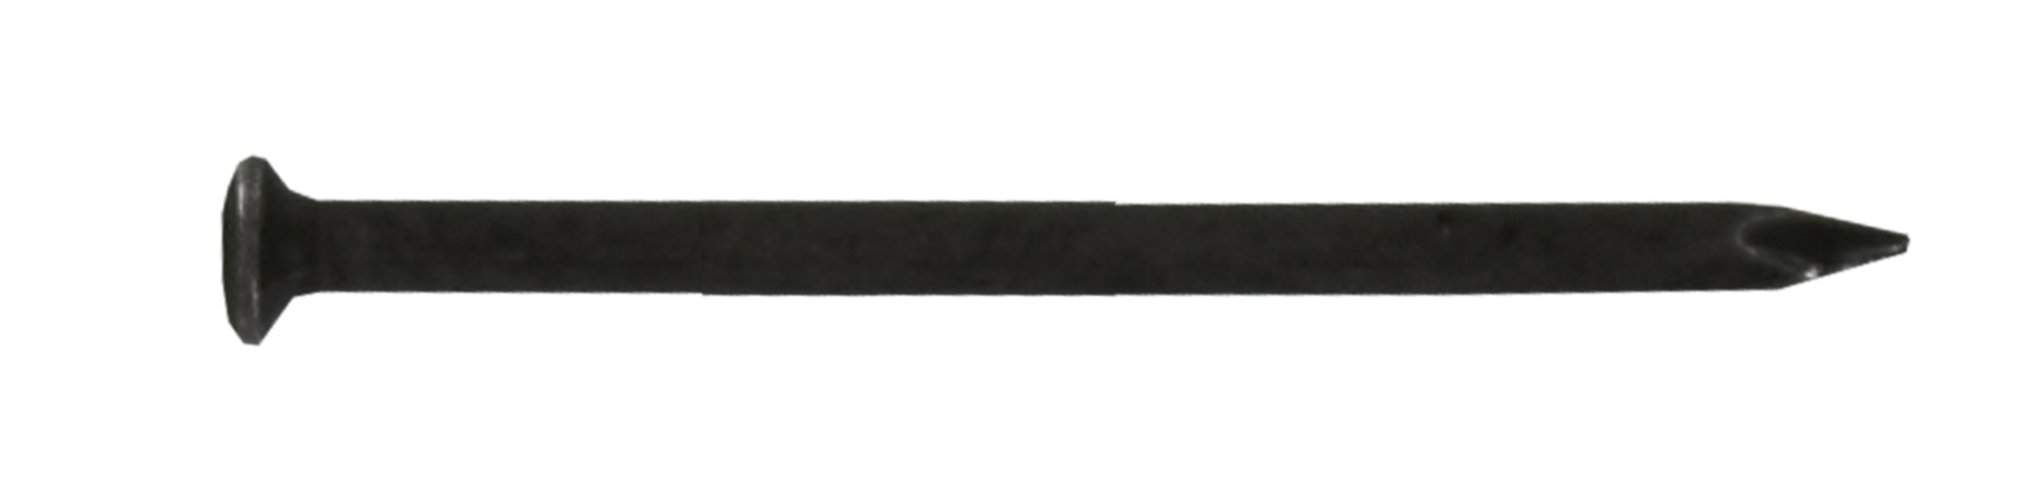 Rundkopfspitze gehärteter Stahl 2x30mm, Beutel mit 80<span class='notranslate' data-dgexclude>Gramm</span>.